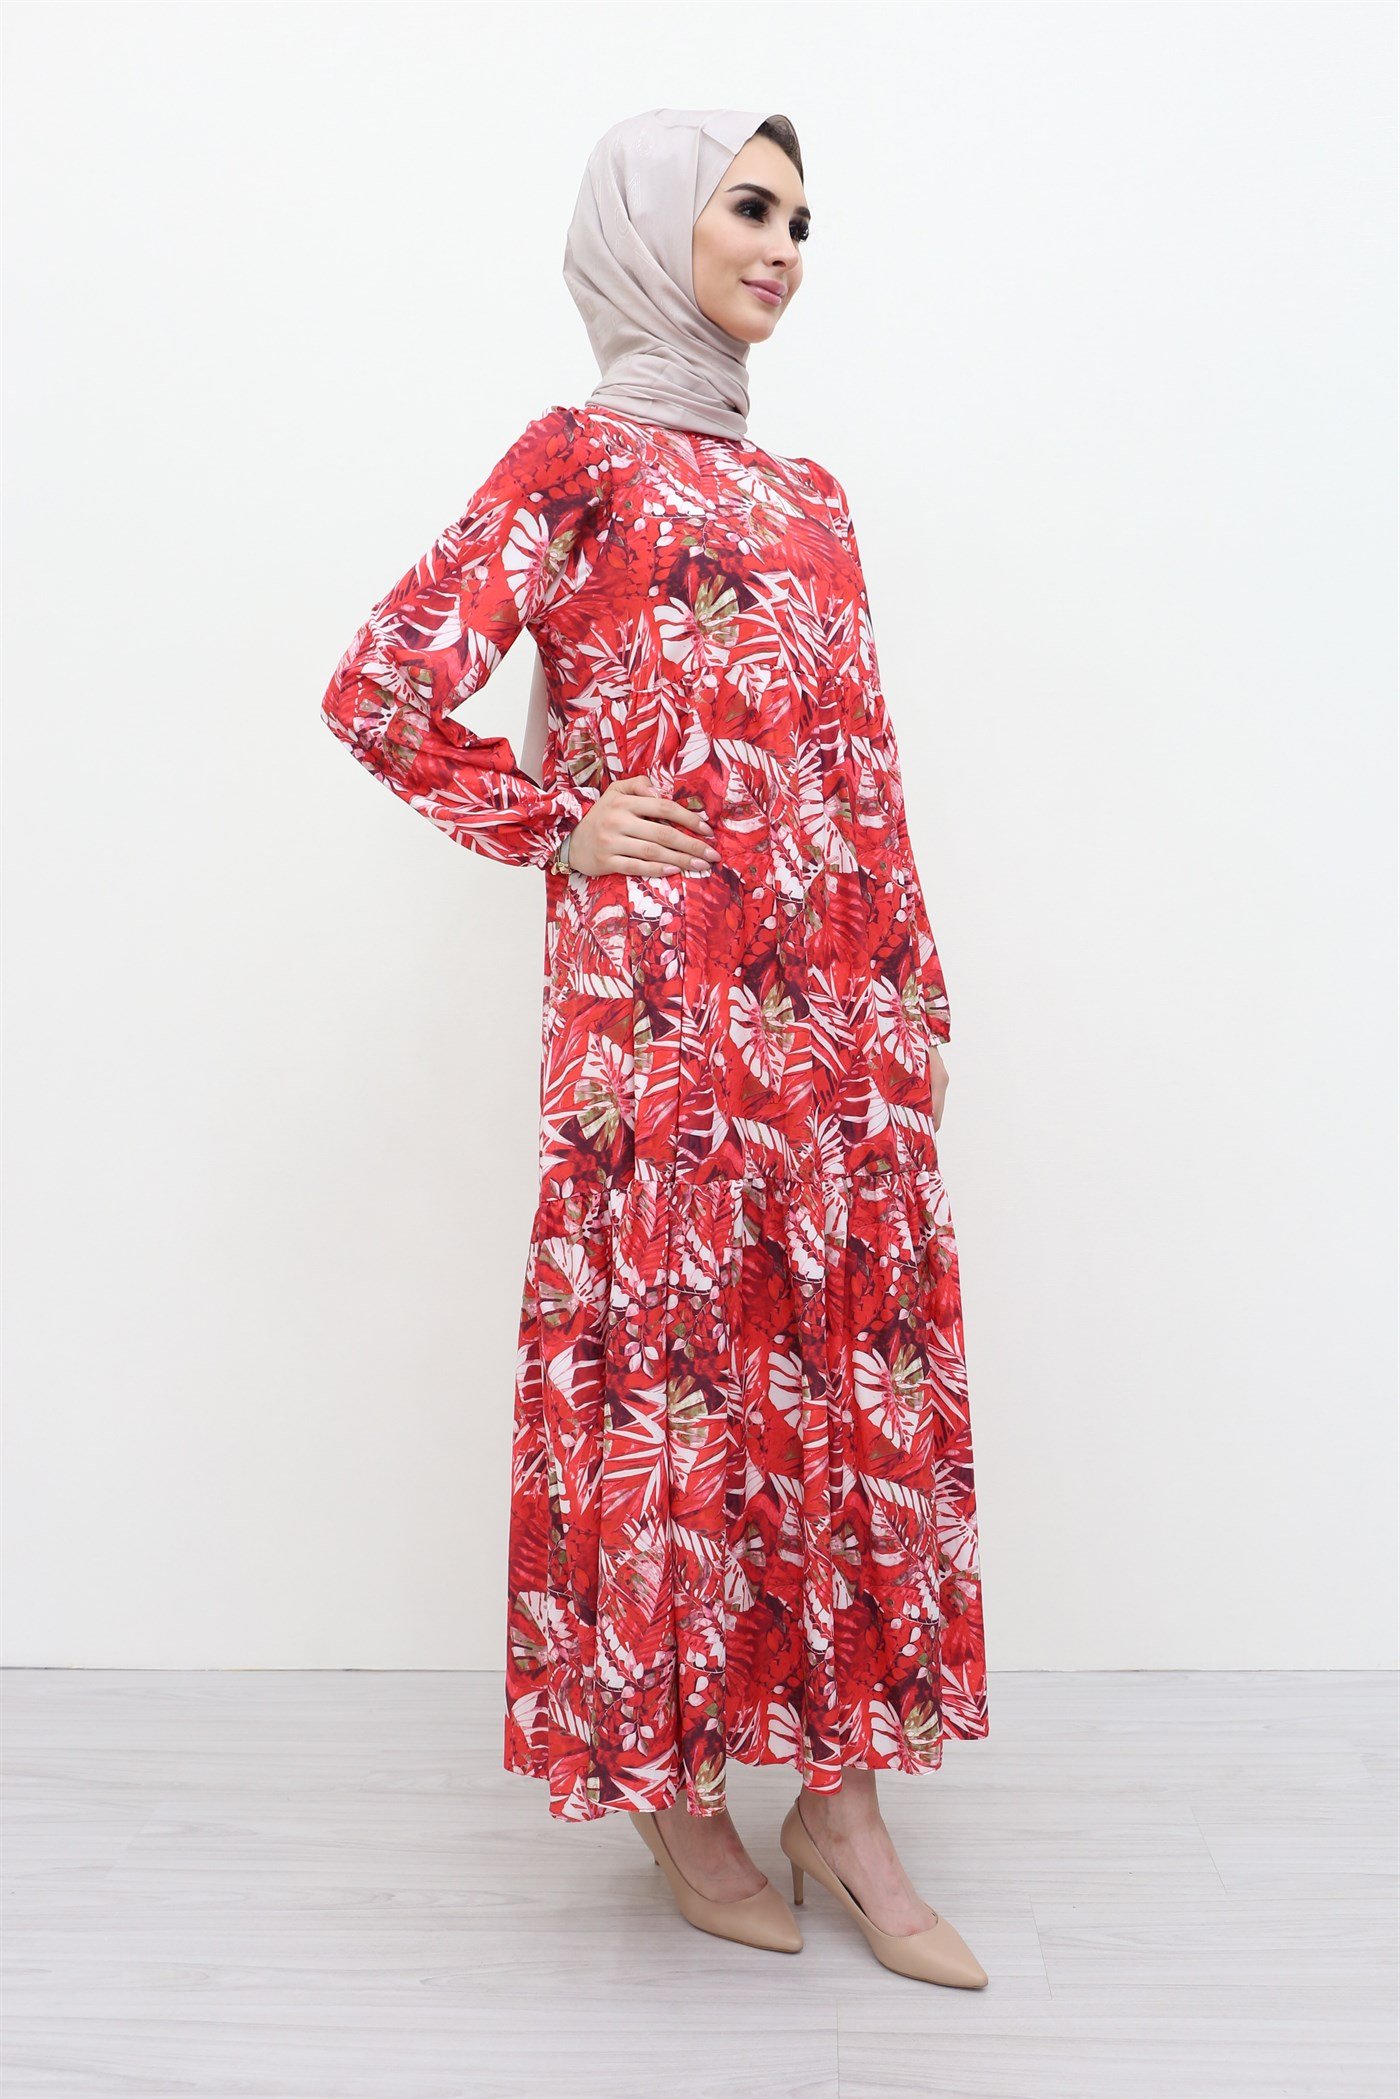 Armine Yaprak Desenli Elbise - Kırmızı Online Sipariş I MAHHAR